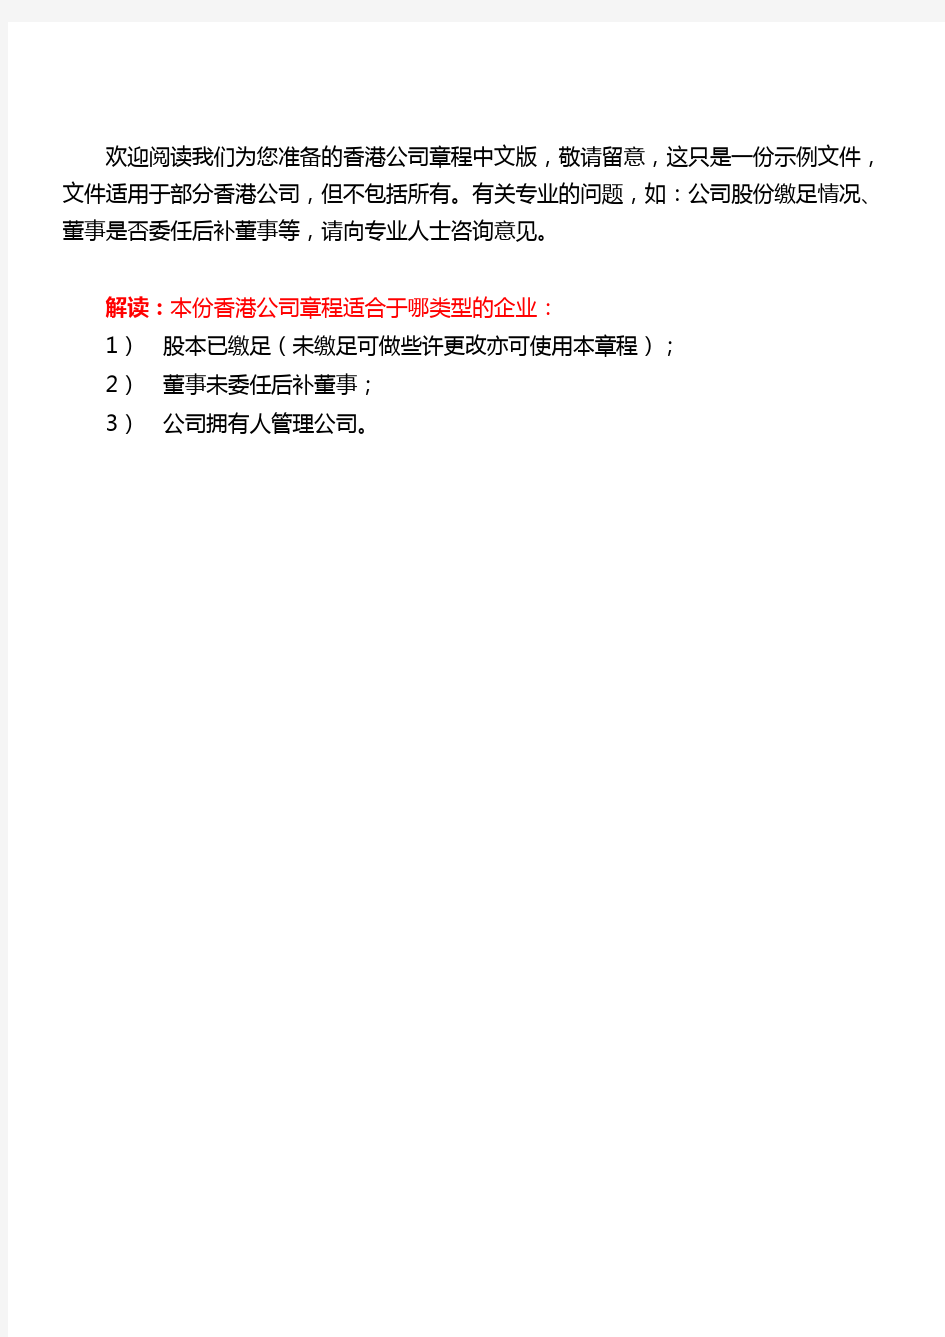 香港公司章程中文版(中文香港公司章程翻译示例)